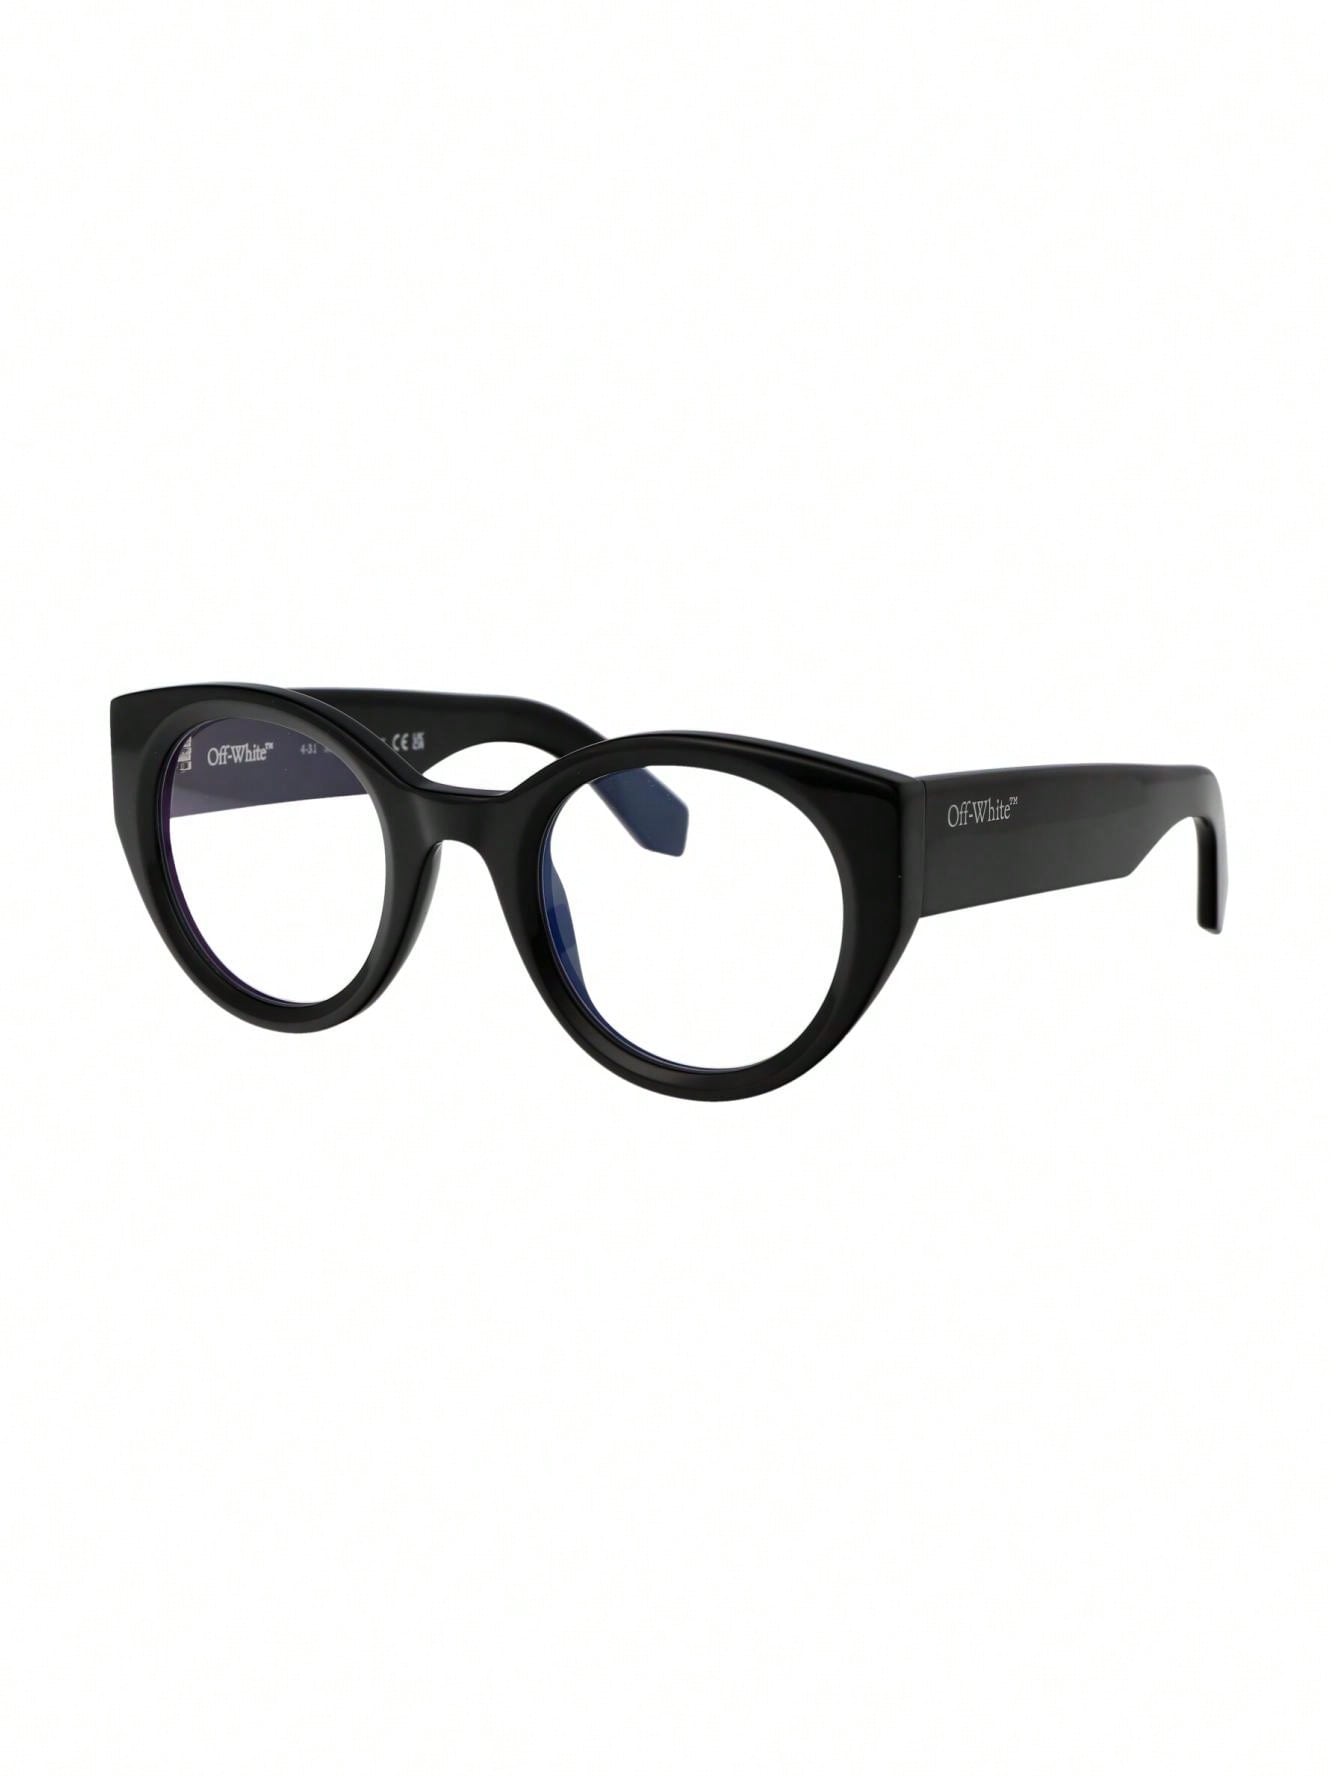 мужские солнцезащитные очки off white черные oeri094f23pla0010107 черный Мужские солнцезащитные очки Off-White БЕЛЫЕ OERJ041F23PLA0011000, белый